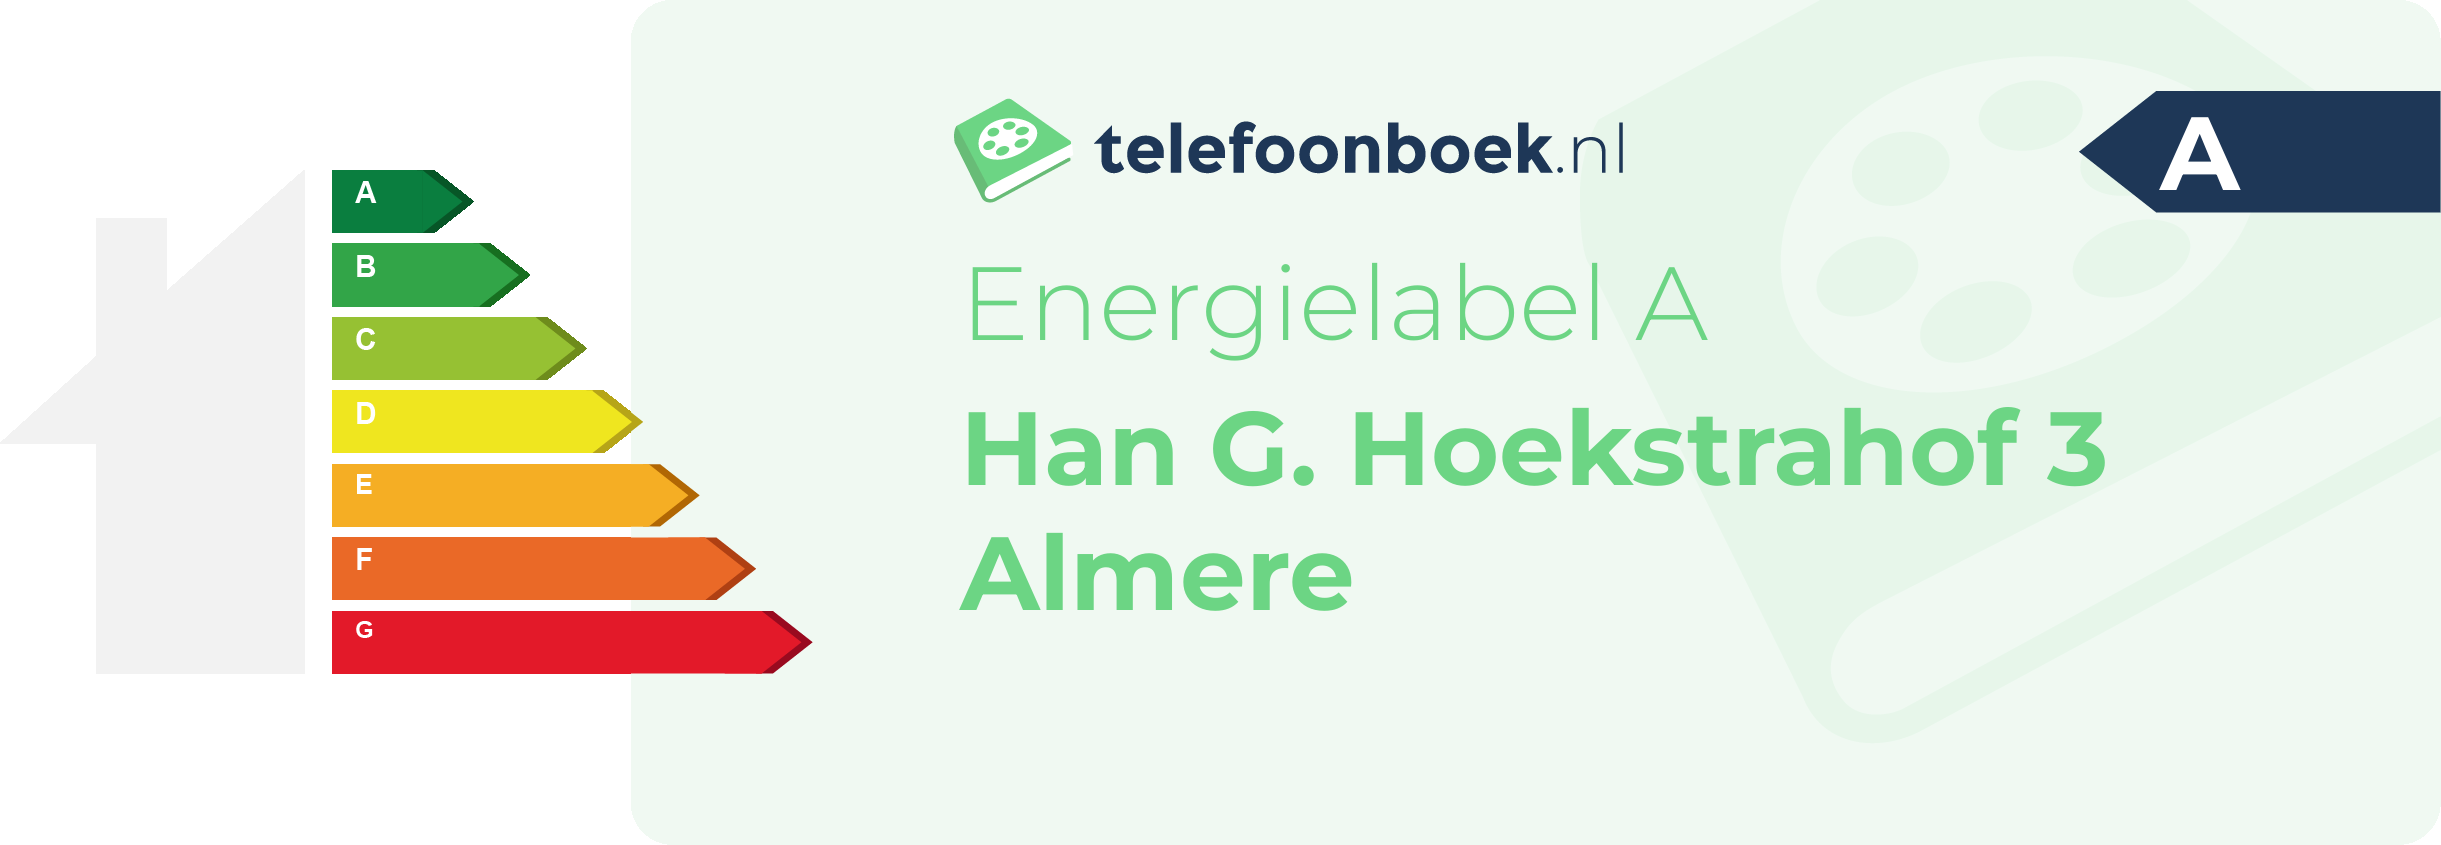 Energielabel Han G. Hoekstrahof 3 Almere